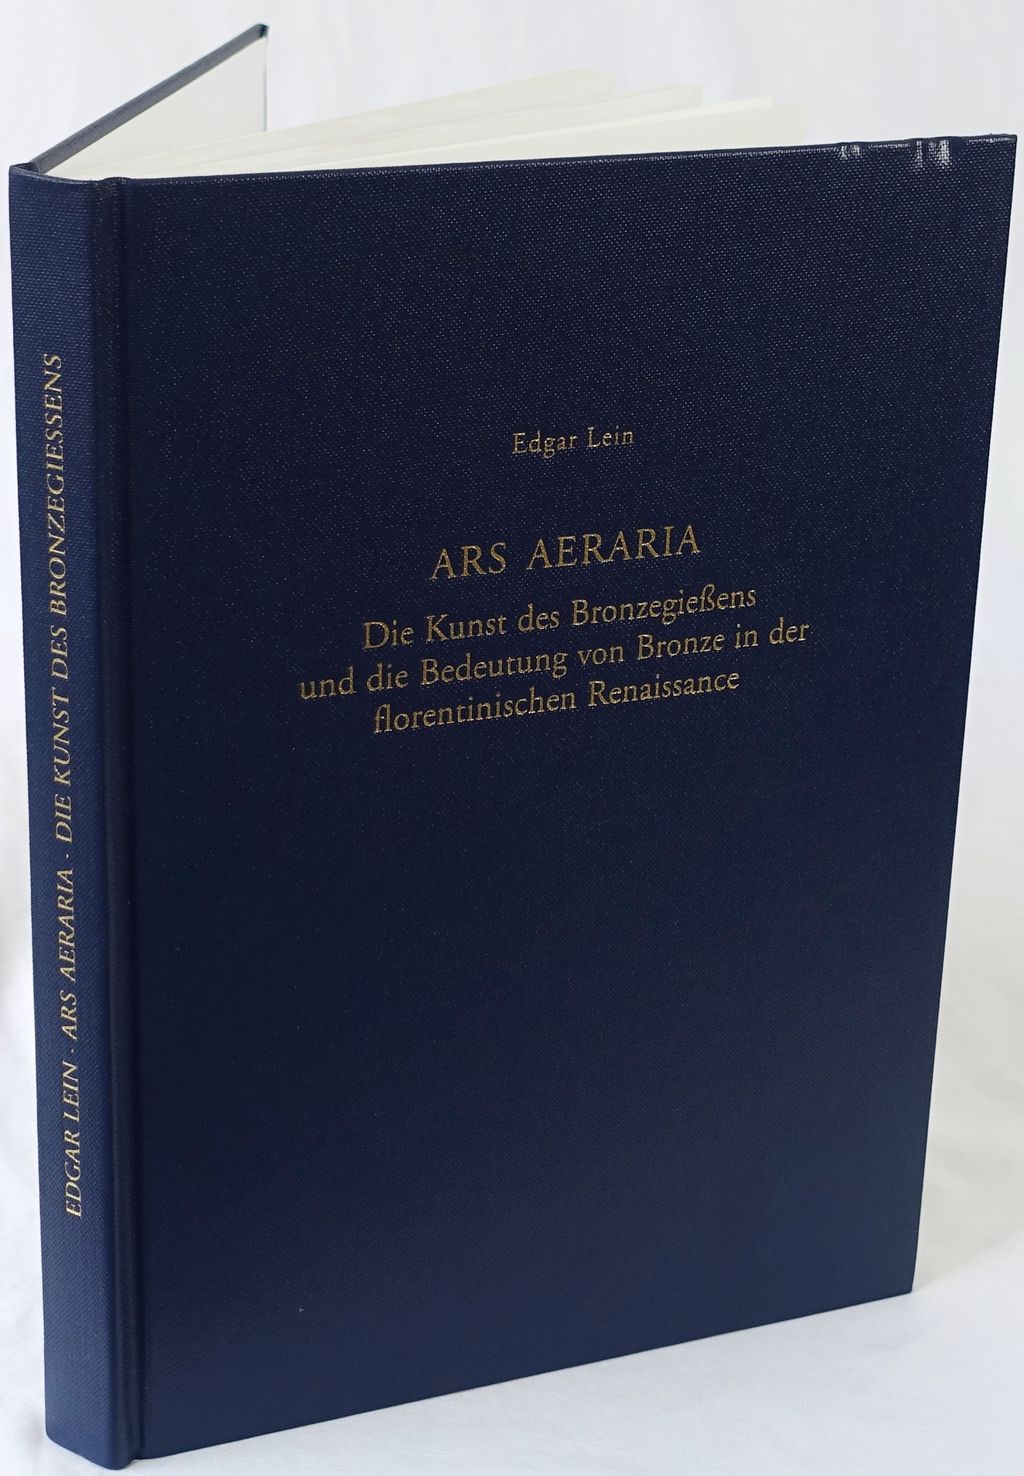 Ars Aeraria. Die Kunst des Bronzegießens und die Bedeutung von Bronze in der florentinischen Renaissance. - Lein, Edgar.